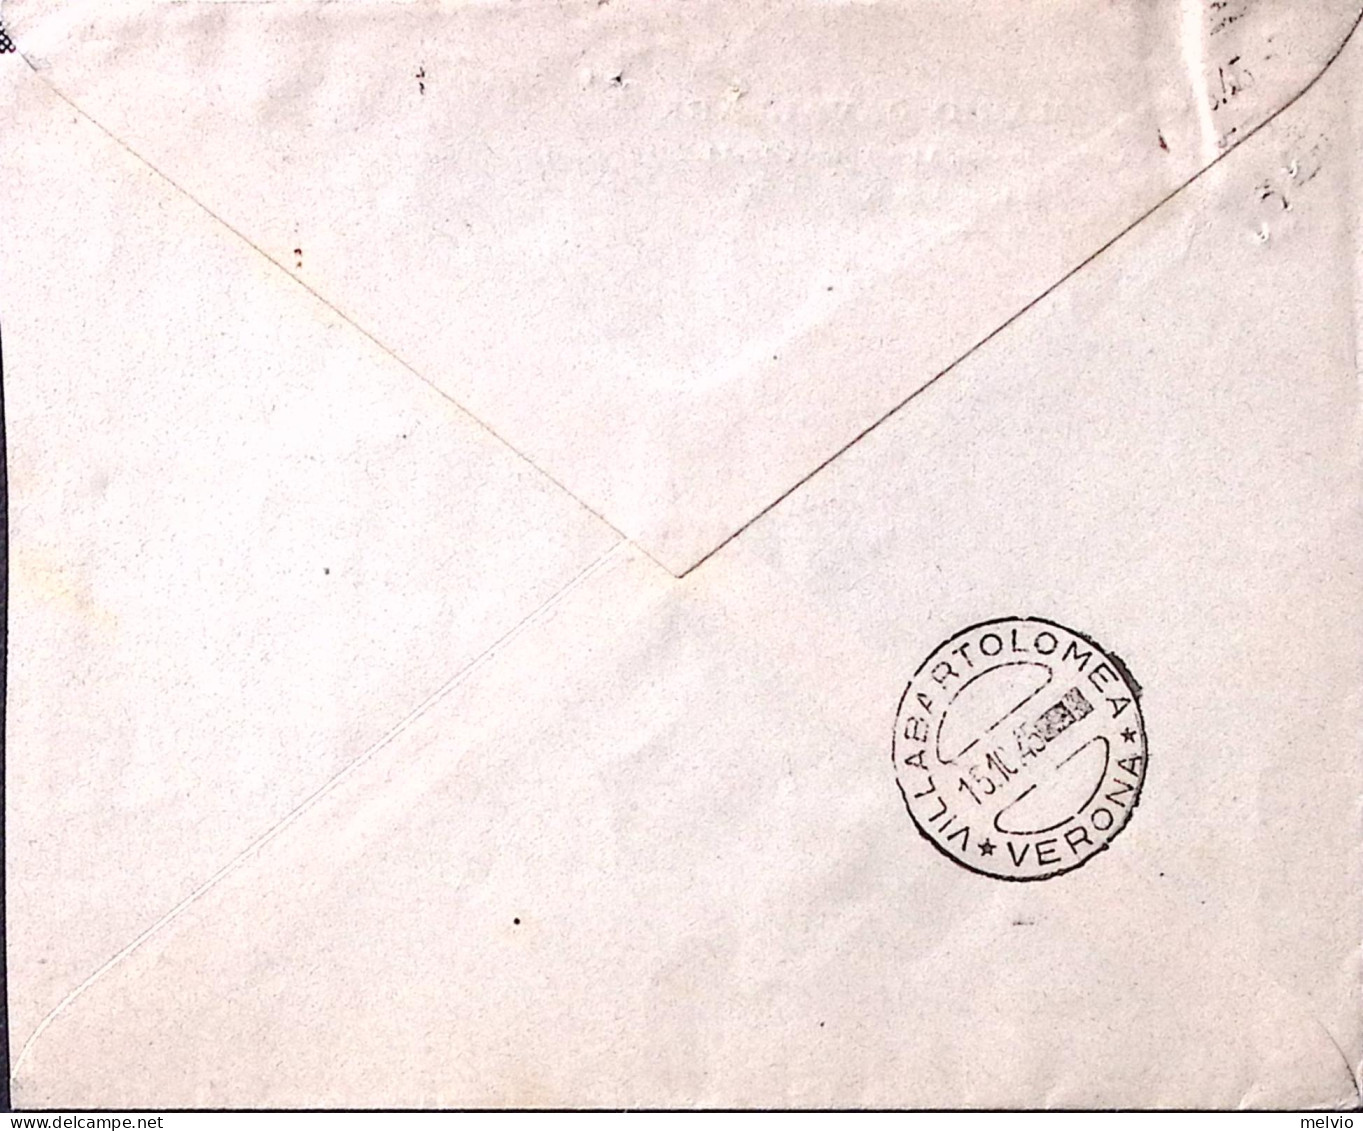 1945-Imperiale Senza Fasci Coppia Lire 1 E 5 (531+534) Su Raccomandata Ferrara ( - Marcophilia